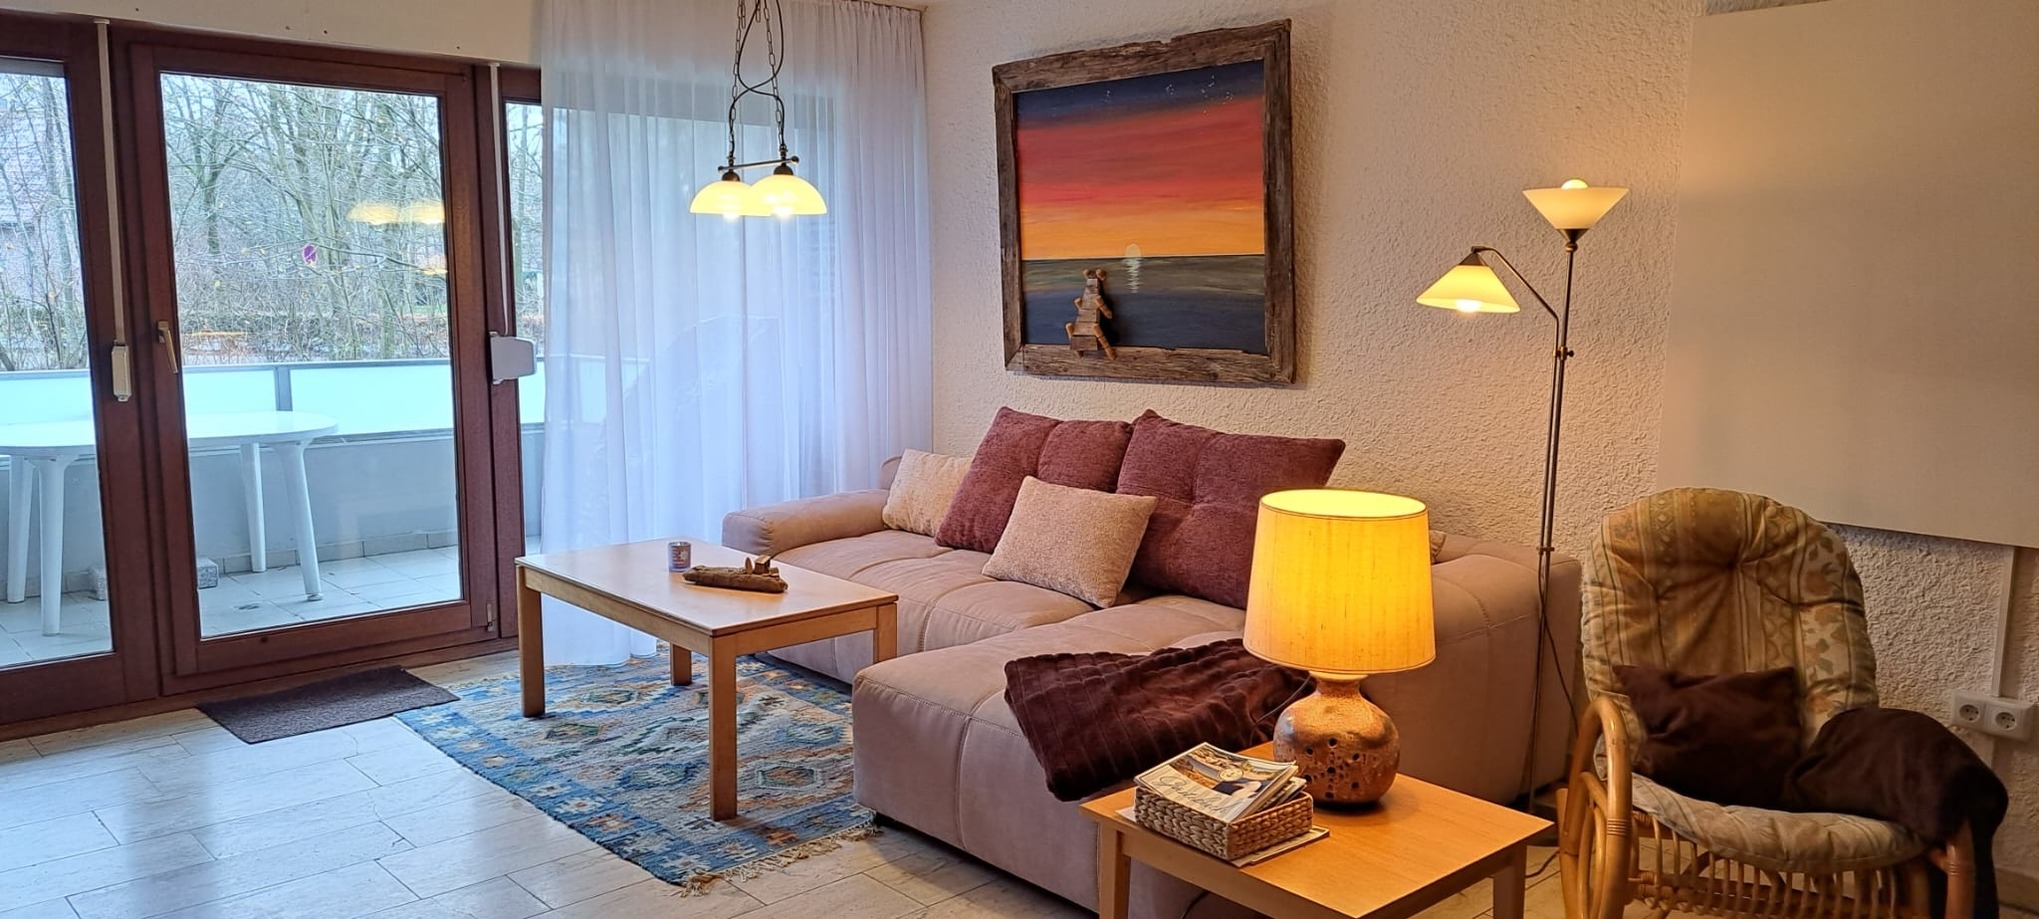 Appartement 1964 in Tossens Ferienwohnung an der Nordsee